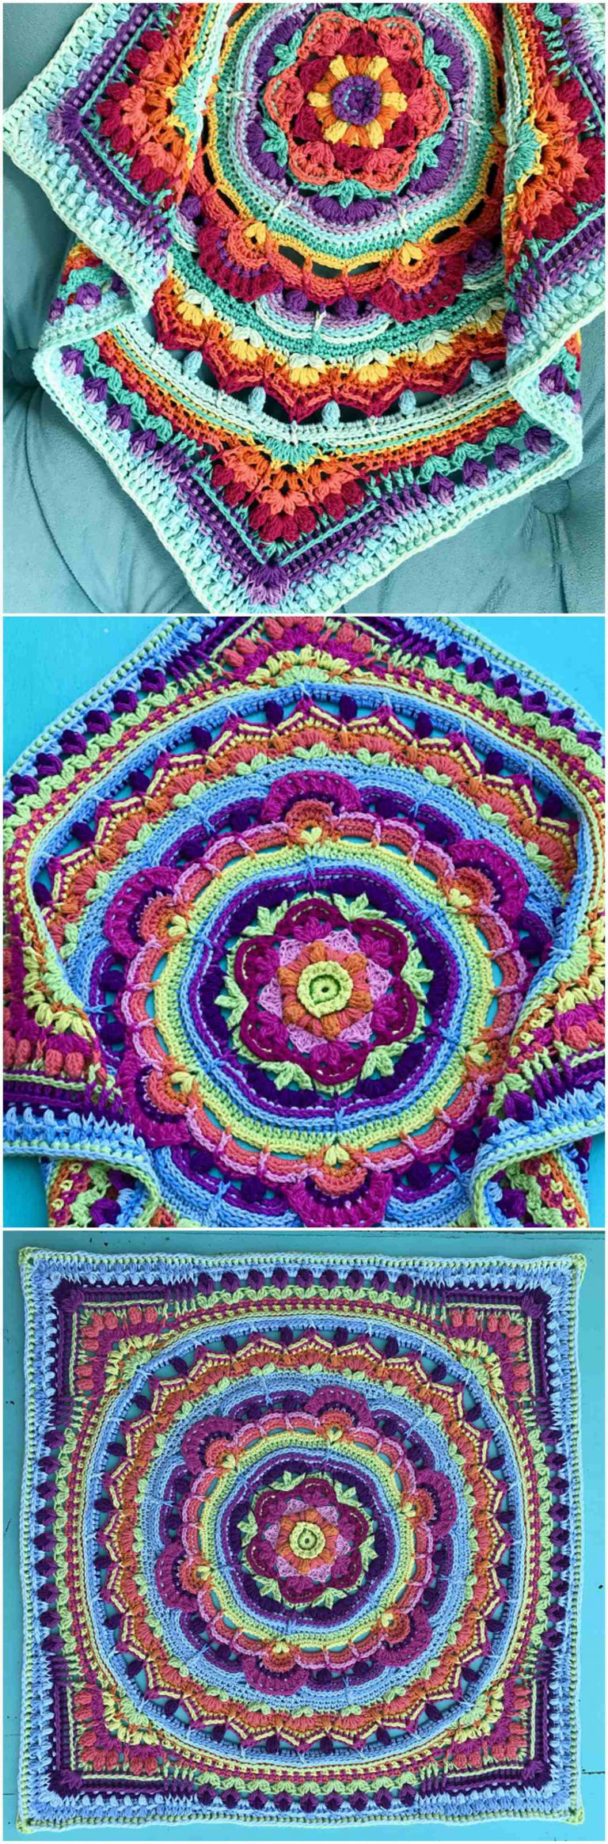 Crochet Fiesta Square